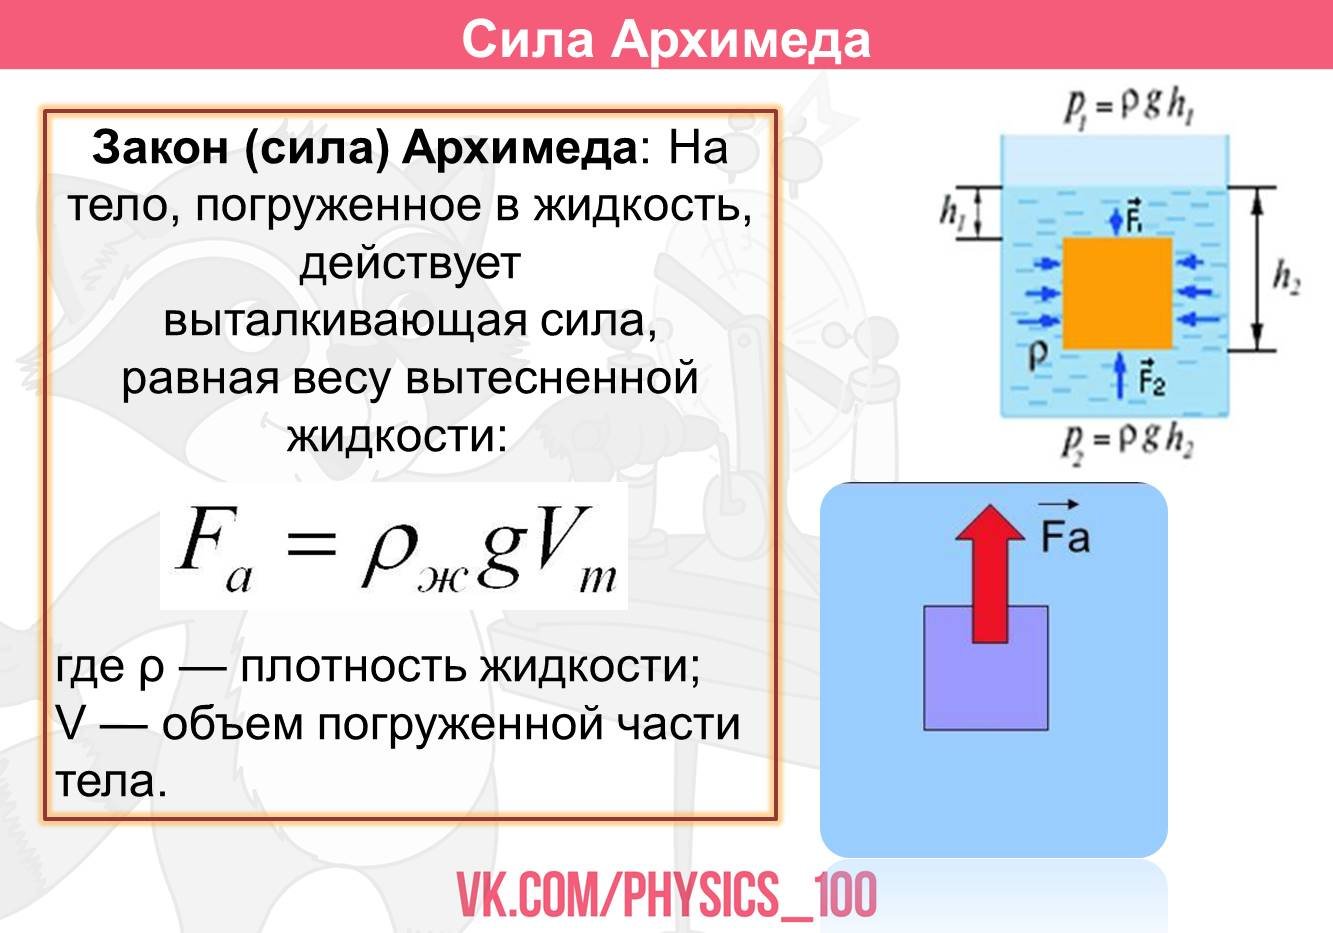 Лабораторная работа по физике сила архимеда. Сила Архимеда рисунок. Сила Архимеда формула через массу. Закон Архимеда Эврика. Как произносится формула силы Архимеда.